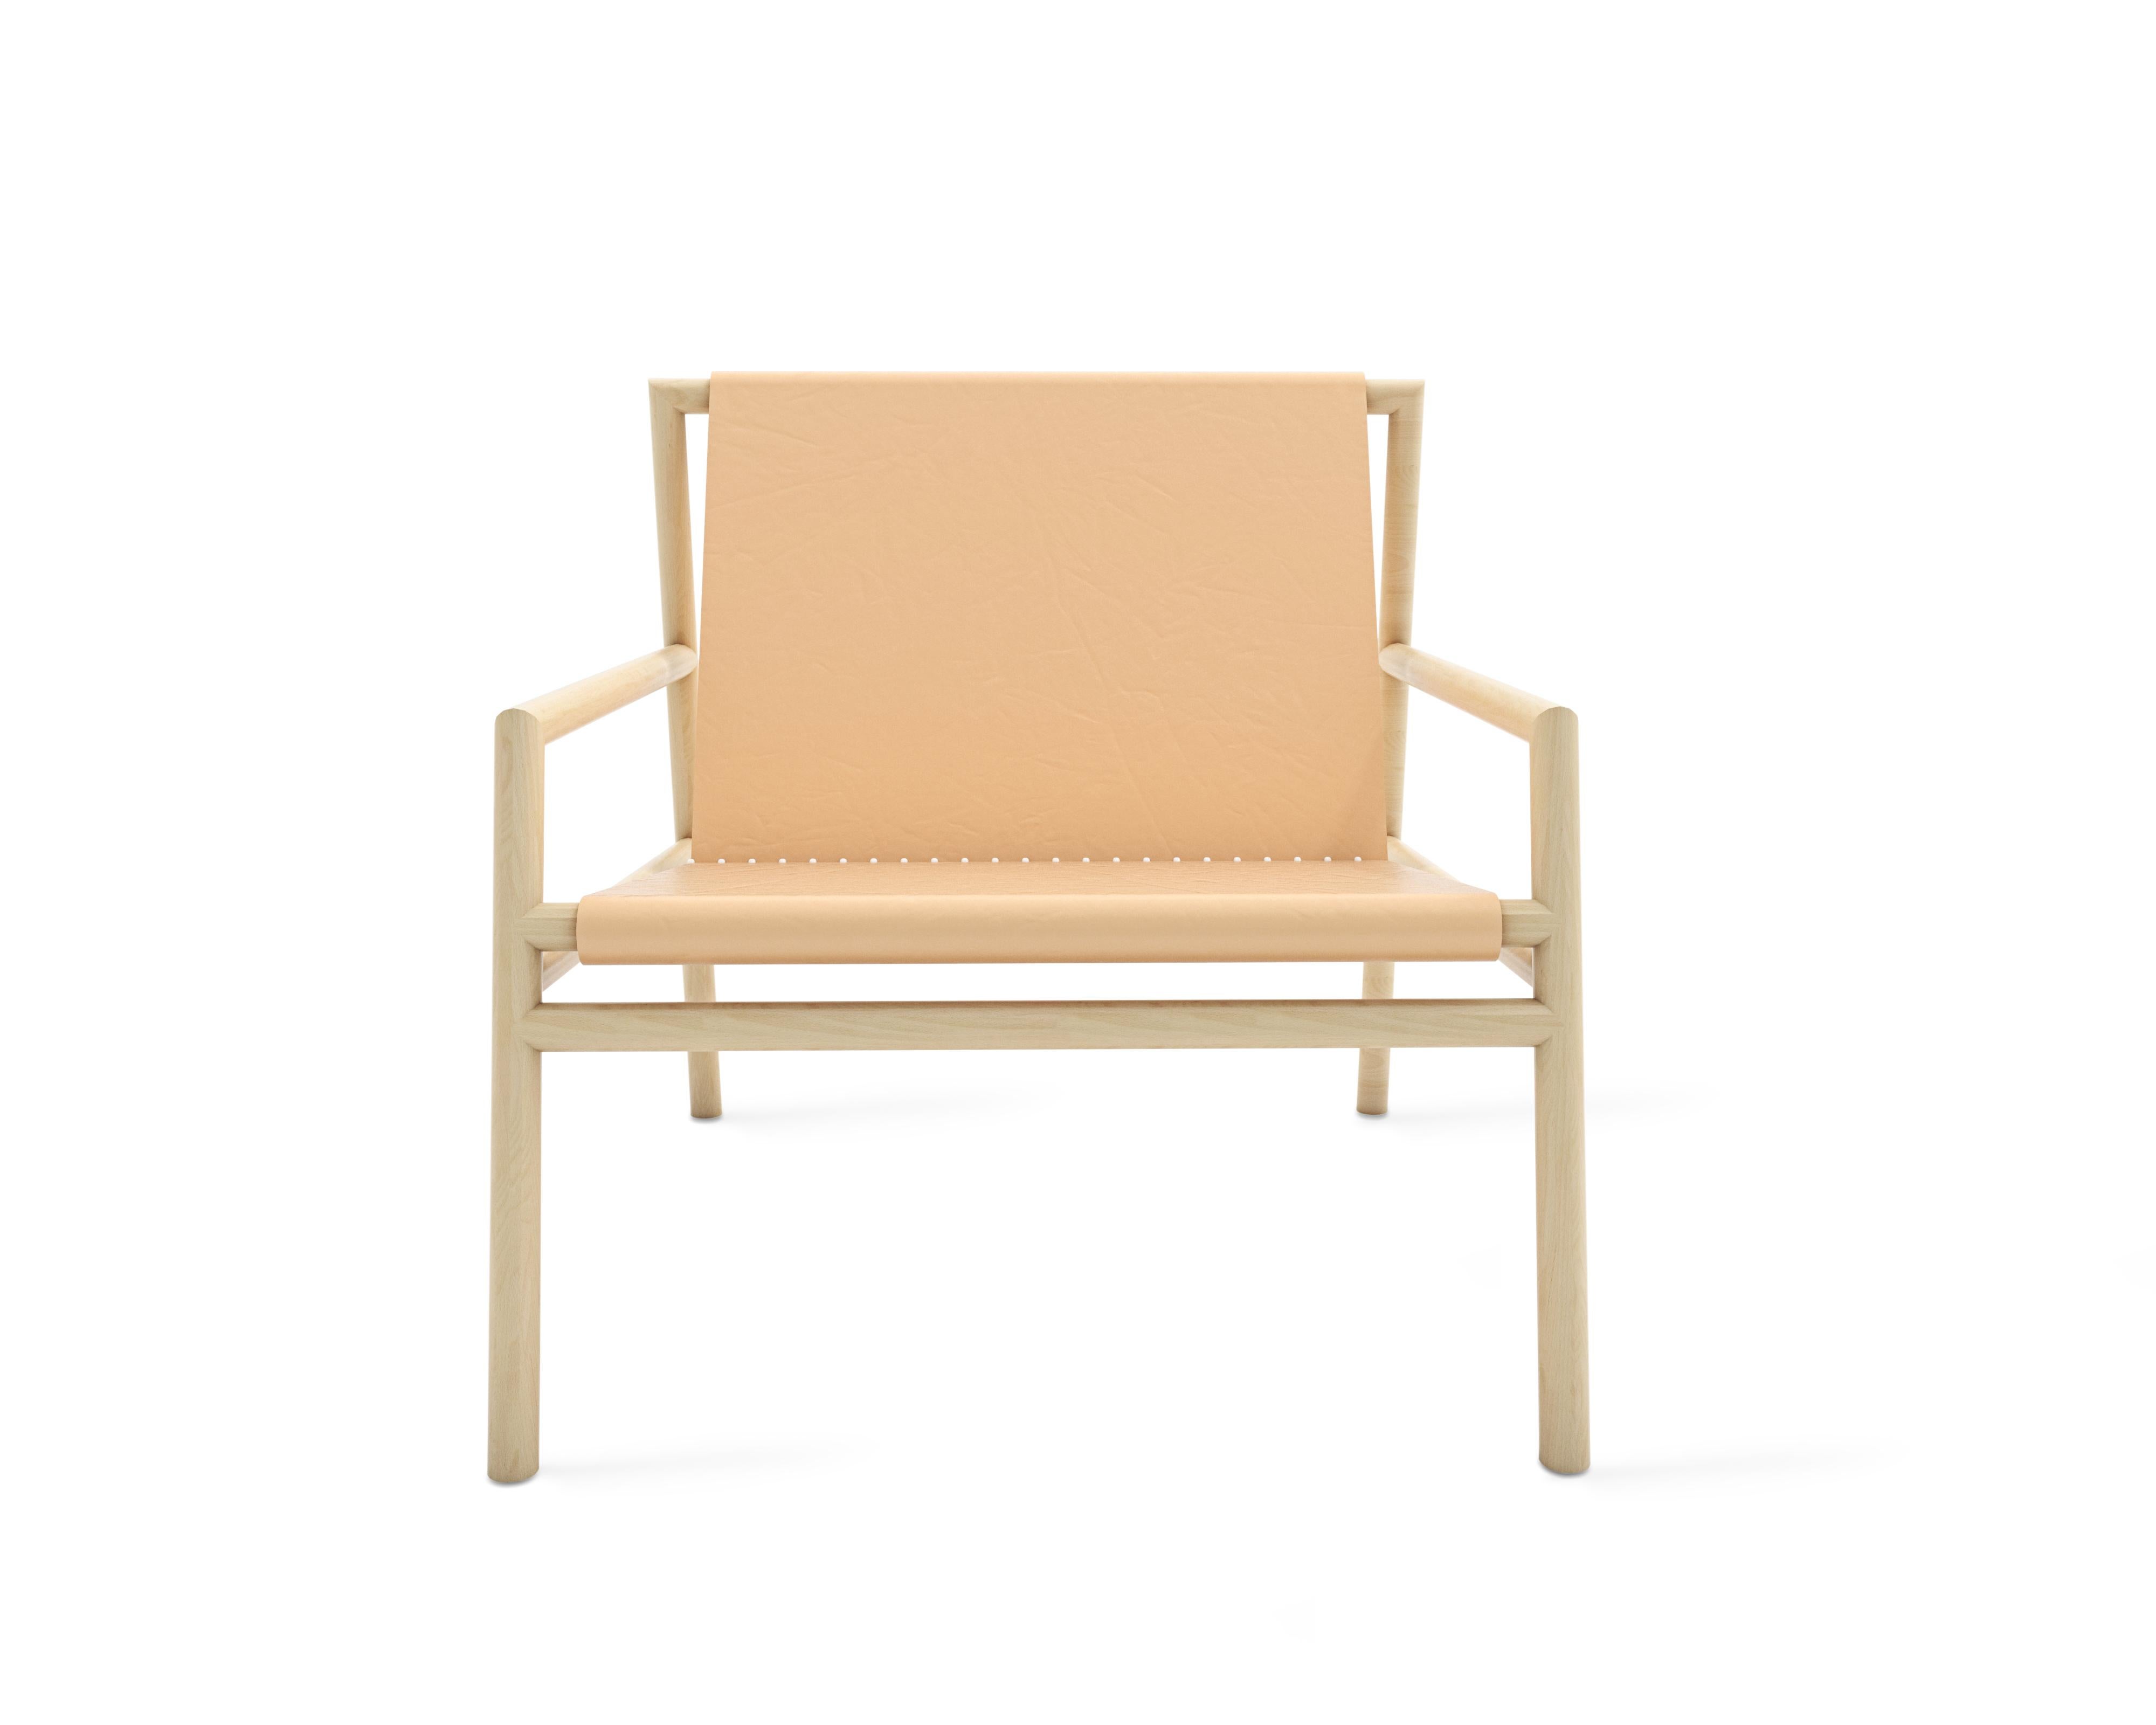 Chaise longue simple, minimale et épurée.
 